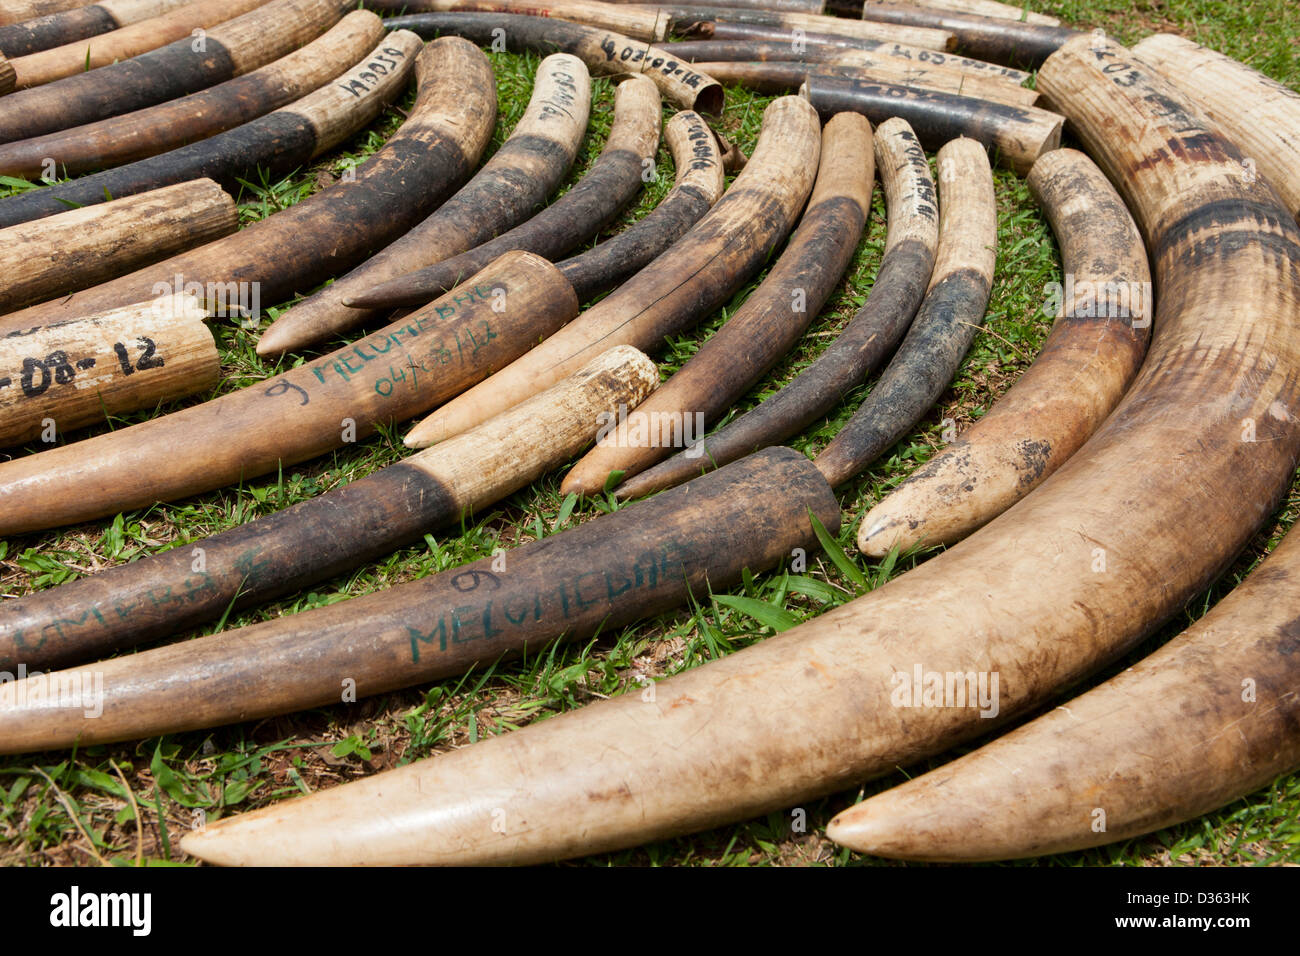 Camerún, 3 de octubre de 2012: el marfil confiscado por el Ministerio de Bosques y Vida Silvestre de los cazadores furtivos y celebrado en la tienda. Foto de stock